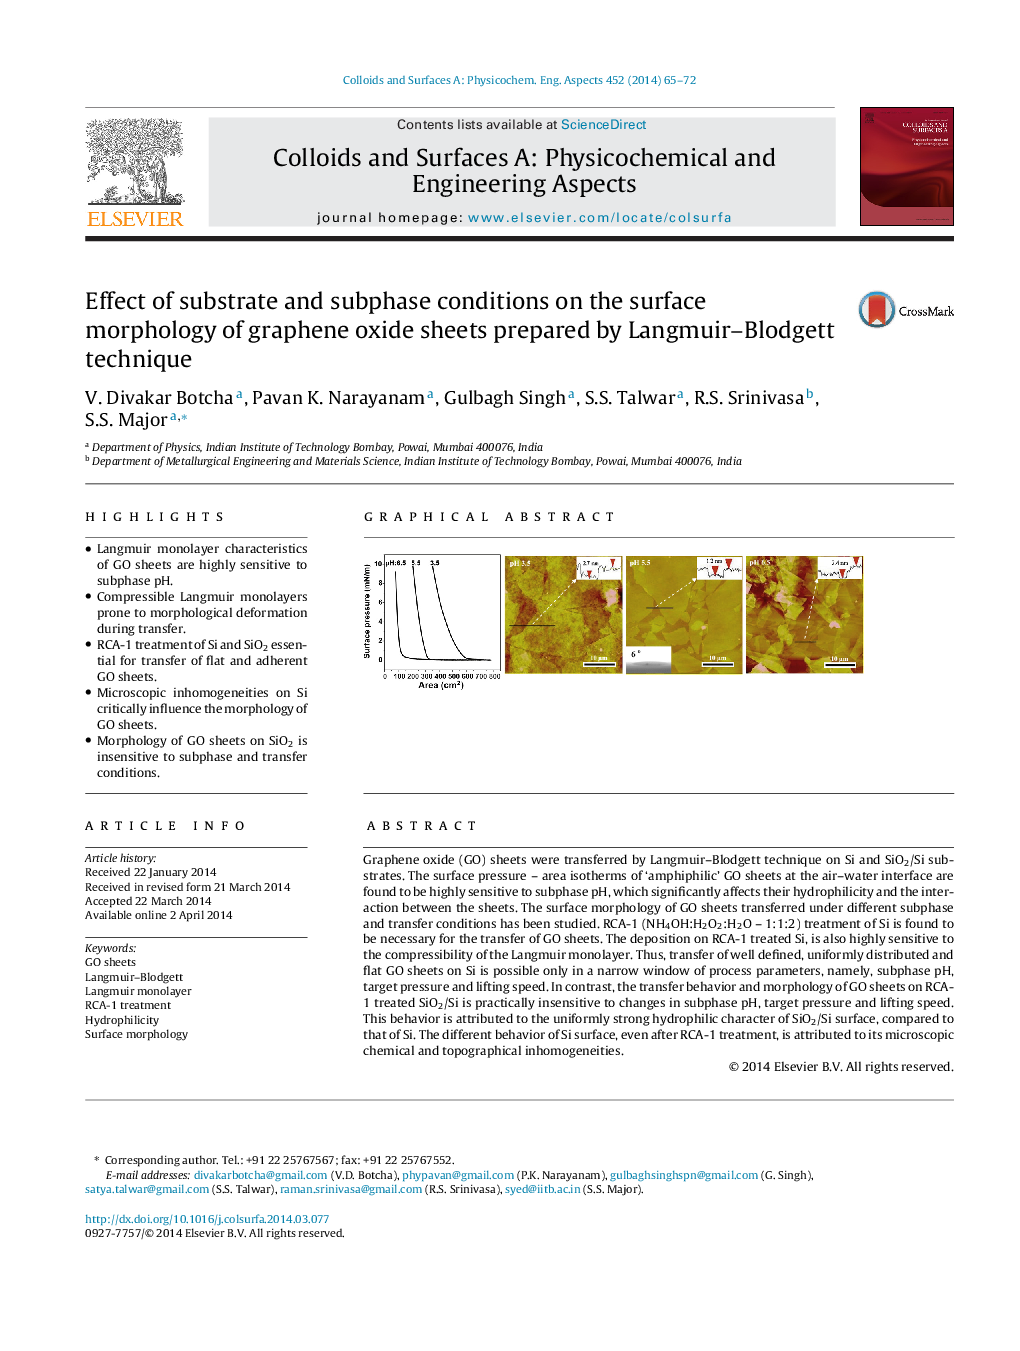 اثر شرایط سوبسترا و زیر فاز بر روی مورفولوژی سطحی صفحات اکسید گرافین تهیه شده توسط تکنیک لانگمیر بلوچت 